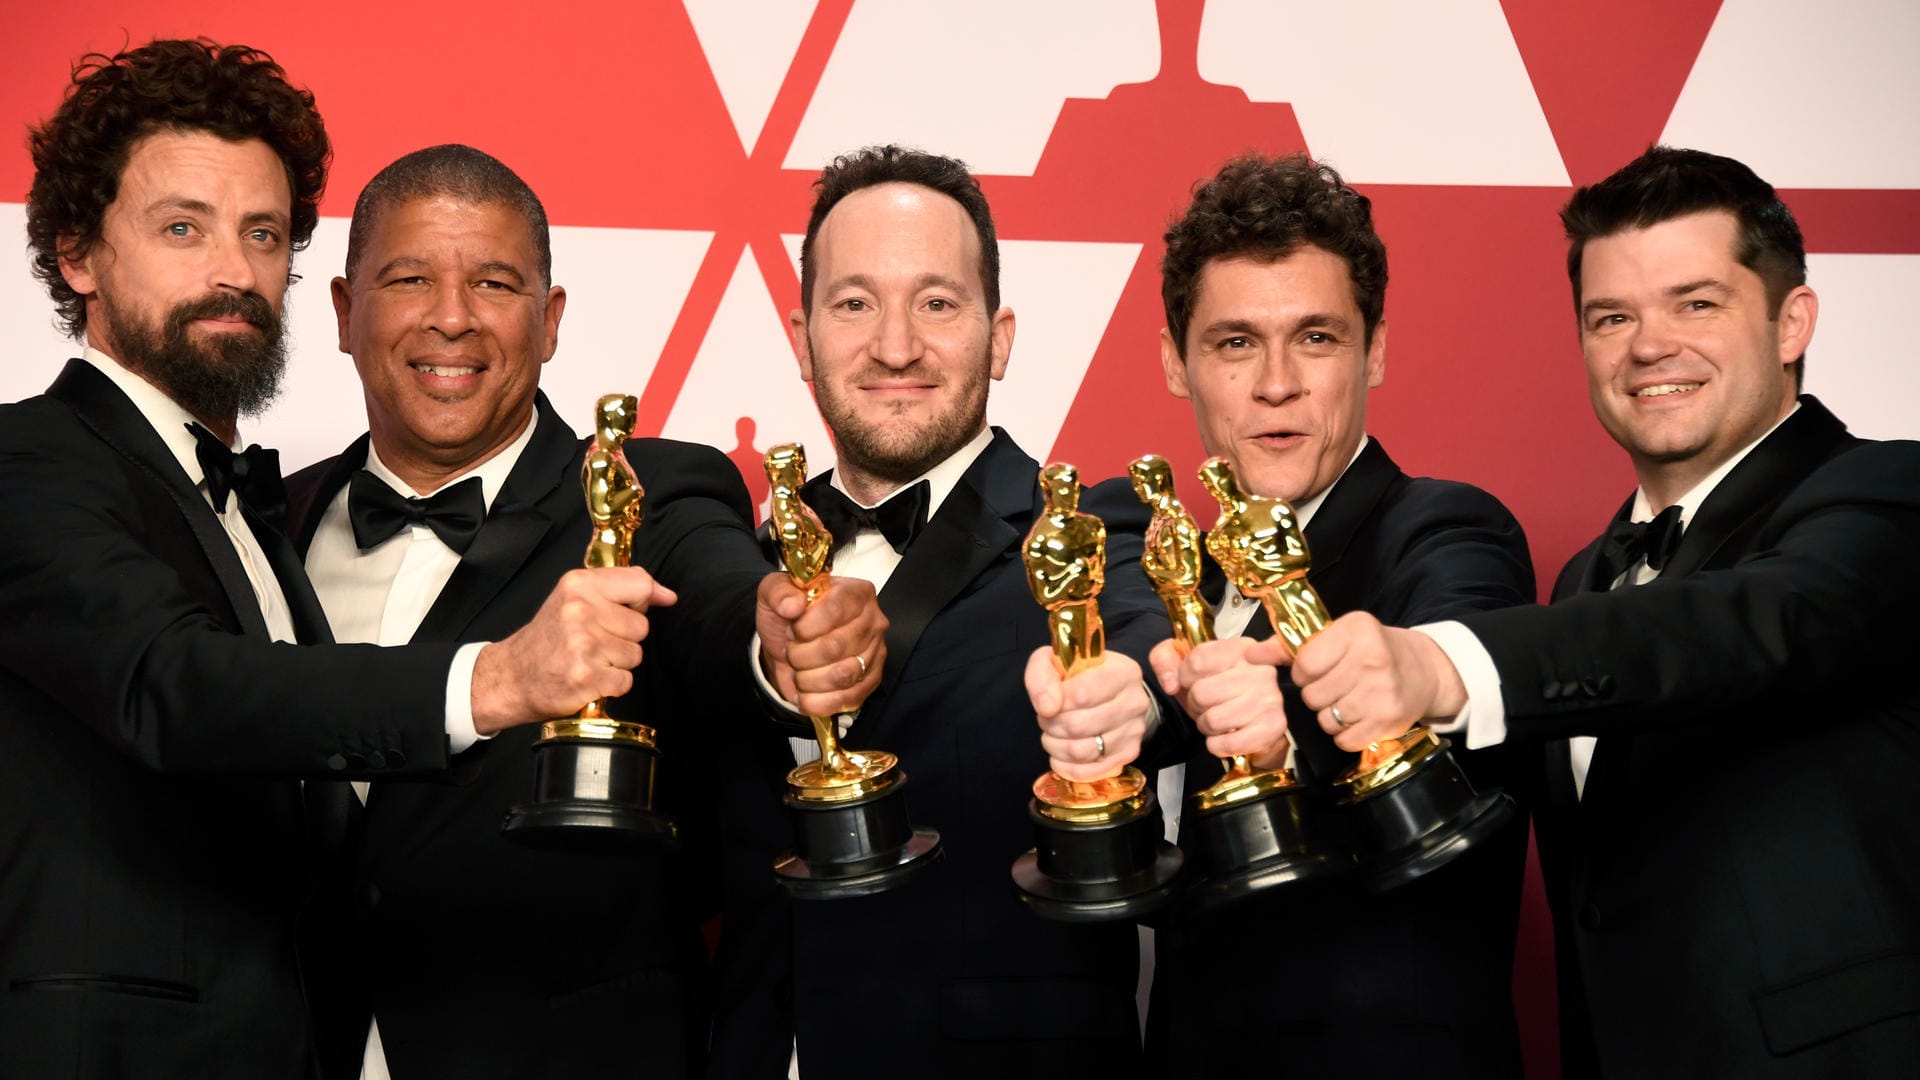 Bob Persichetti, Peter Ramsey, Rodney Rothman, Phil Lord und Christopher Miller bekamen ihren Oscar für "Spider-Man: A New Universe".